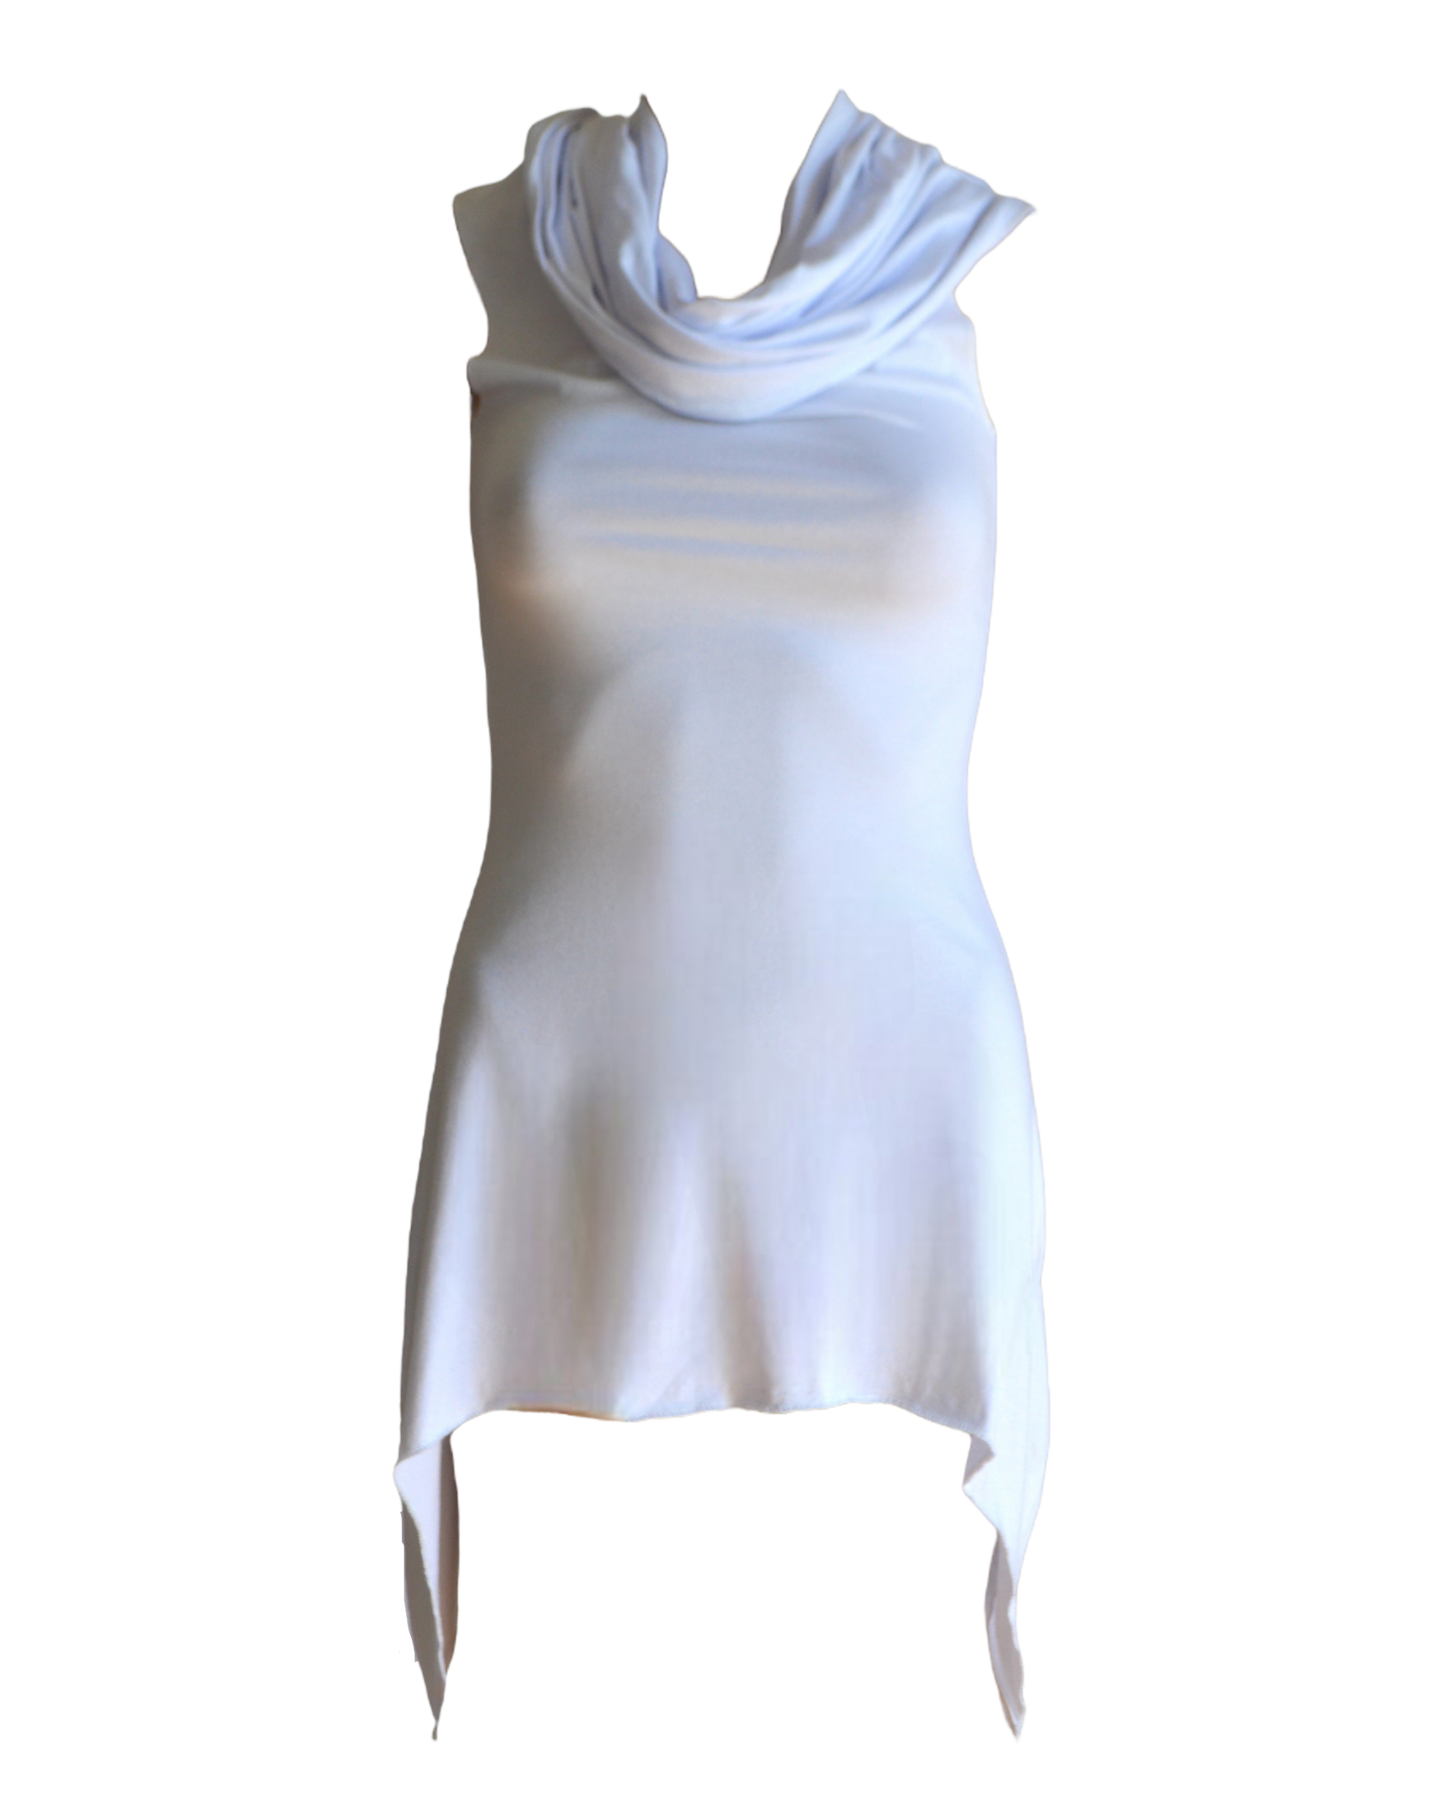 Gladiatrix Dress in White